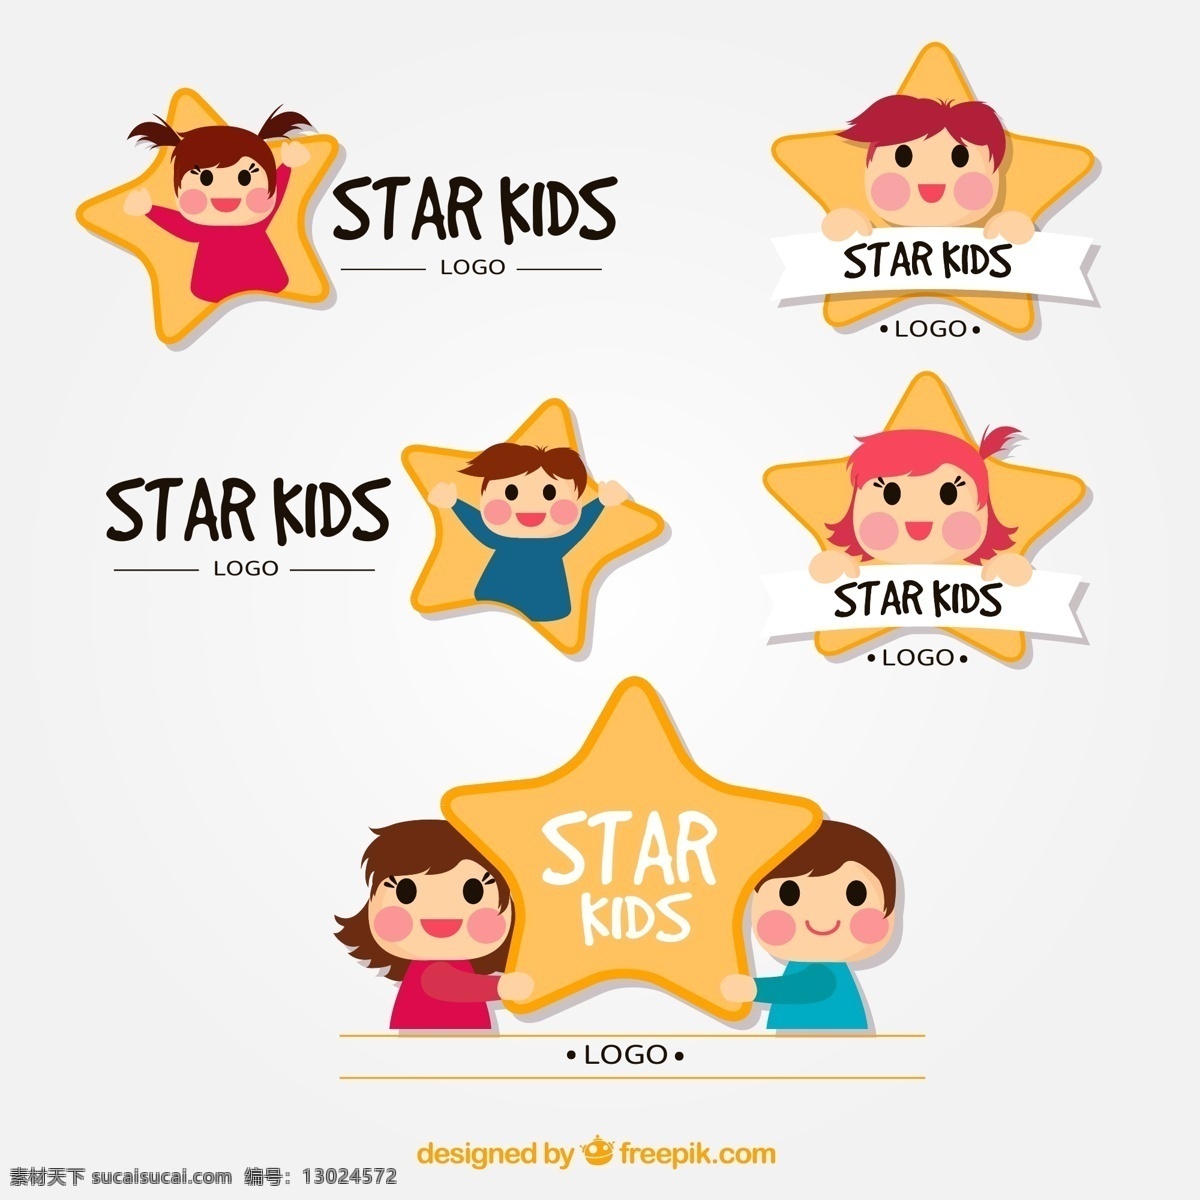 款 可爱 儿童 明星 标志 矢量 男孩 女孩 星星 商务 时尚 头像 矢量图 ai格式 矢量素材 最新矢量图 logo设计